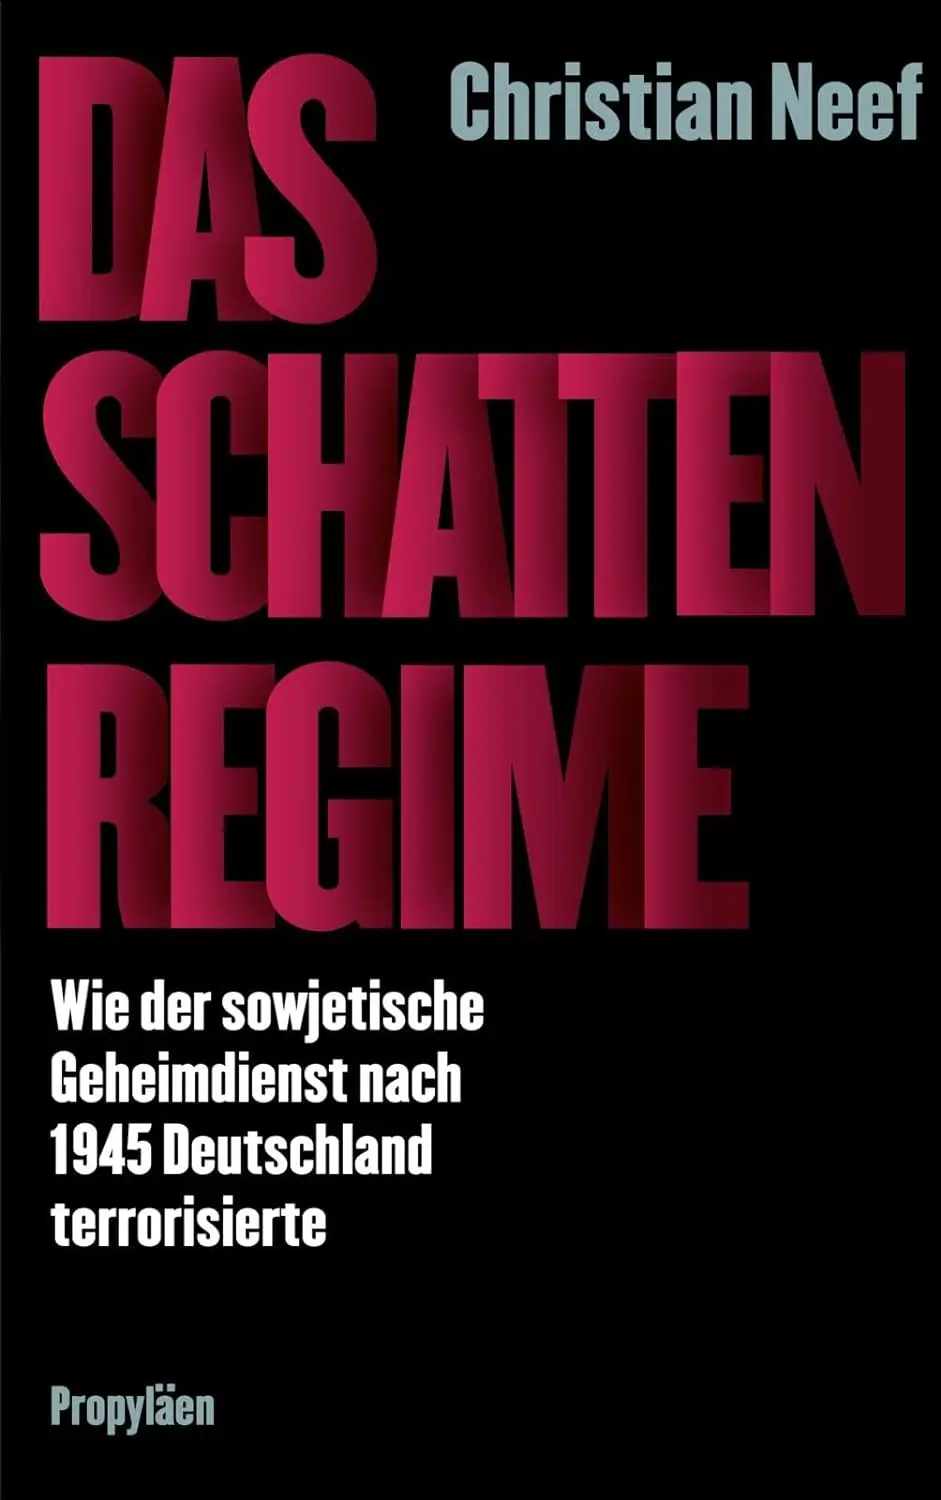 Buchcover: Christian Neef: Das Schattenregime.